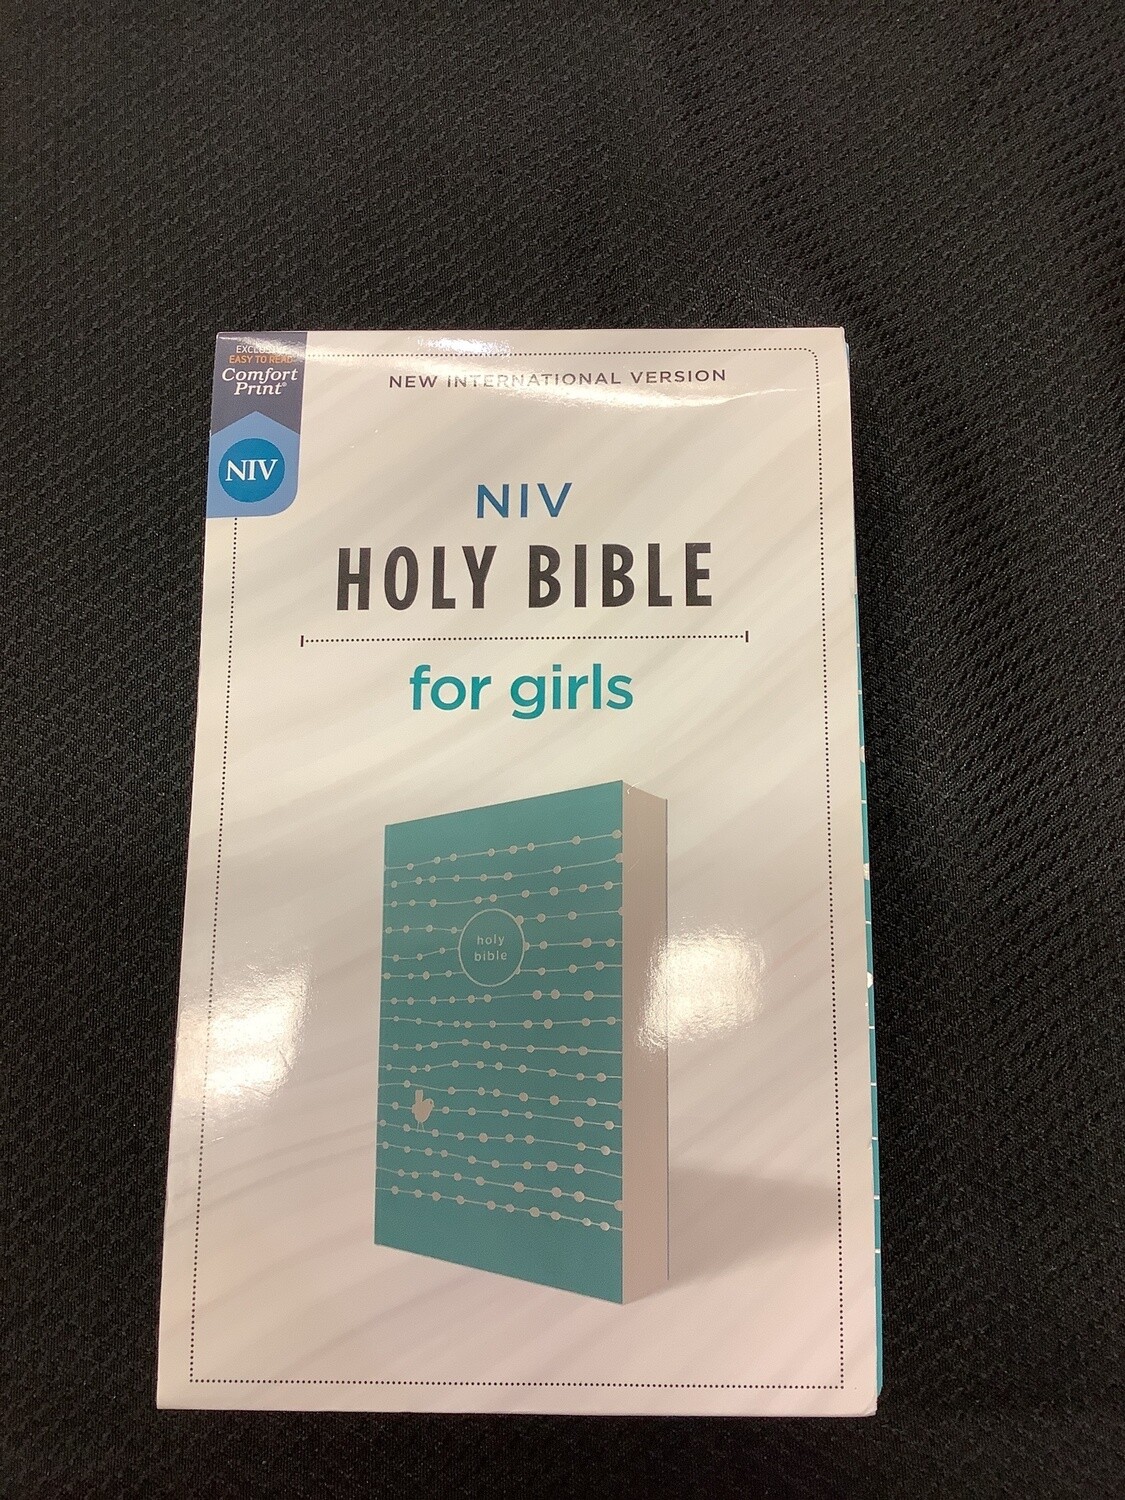 NIV Holy Bible for girls